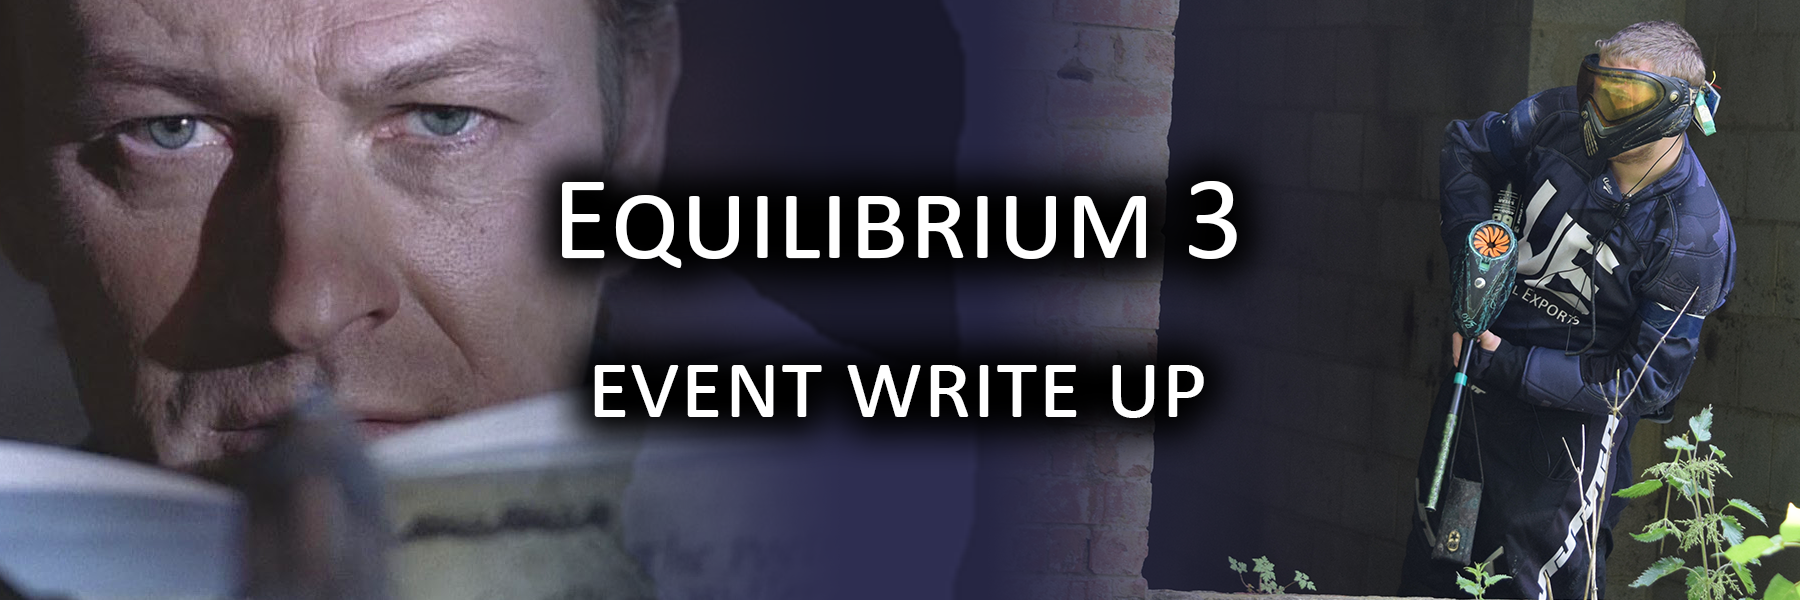 Equilibrium 3 Event Writeup